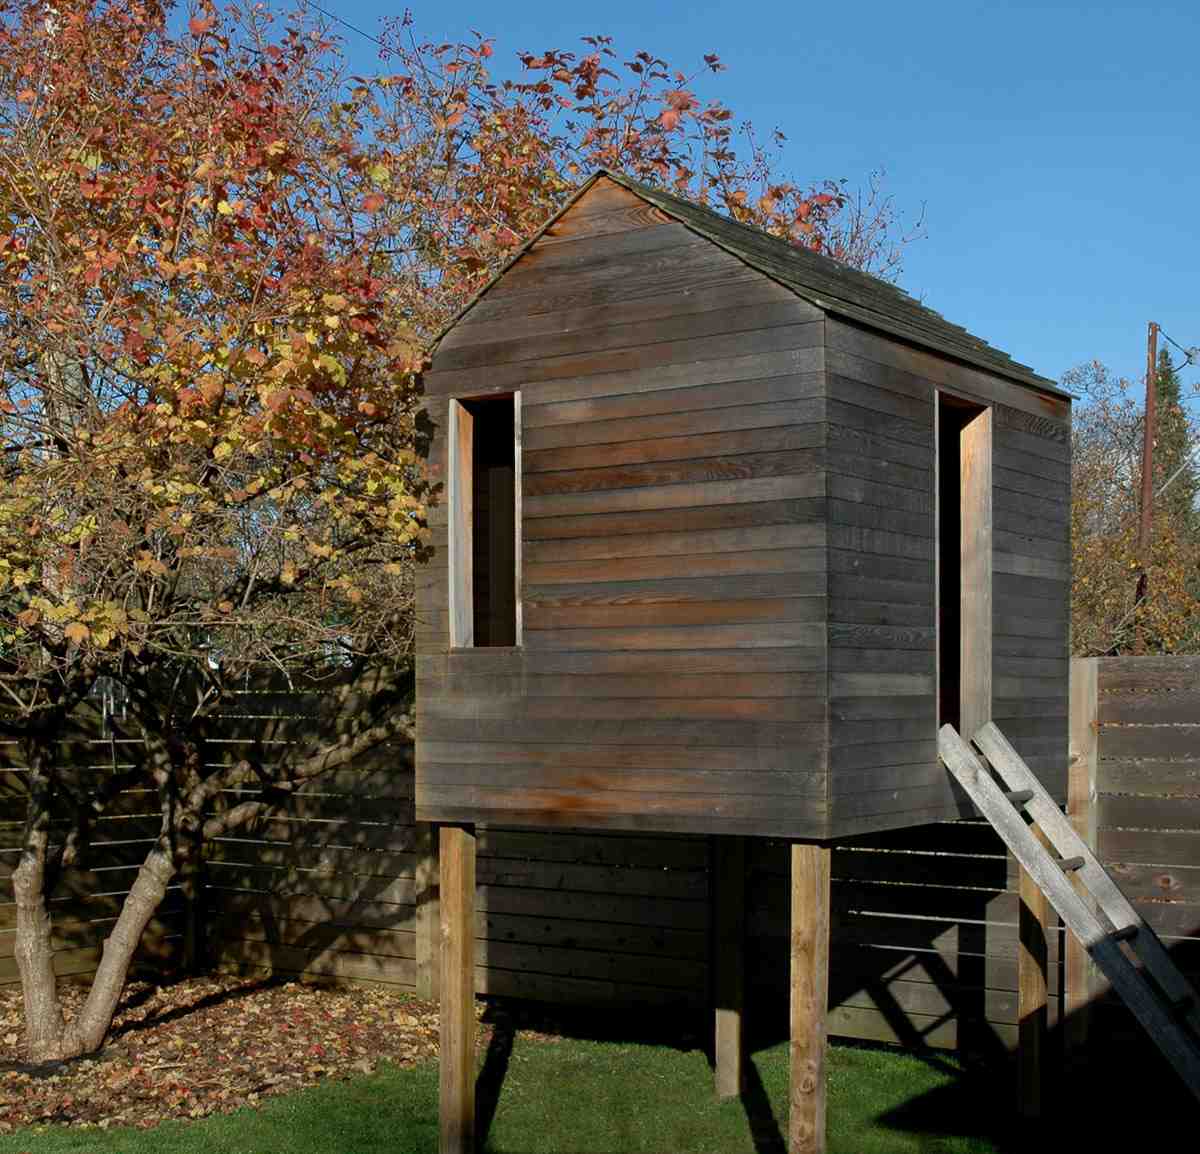 Nyi Imas: Unusual garden shed designs